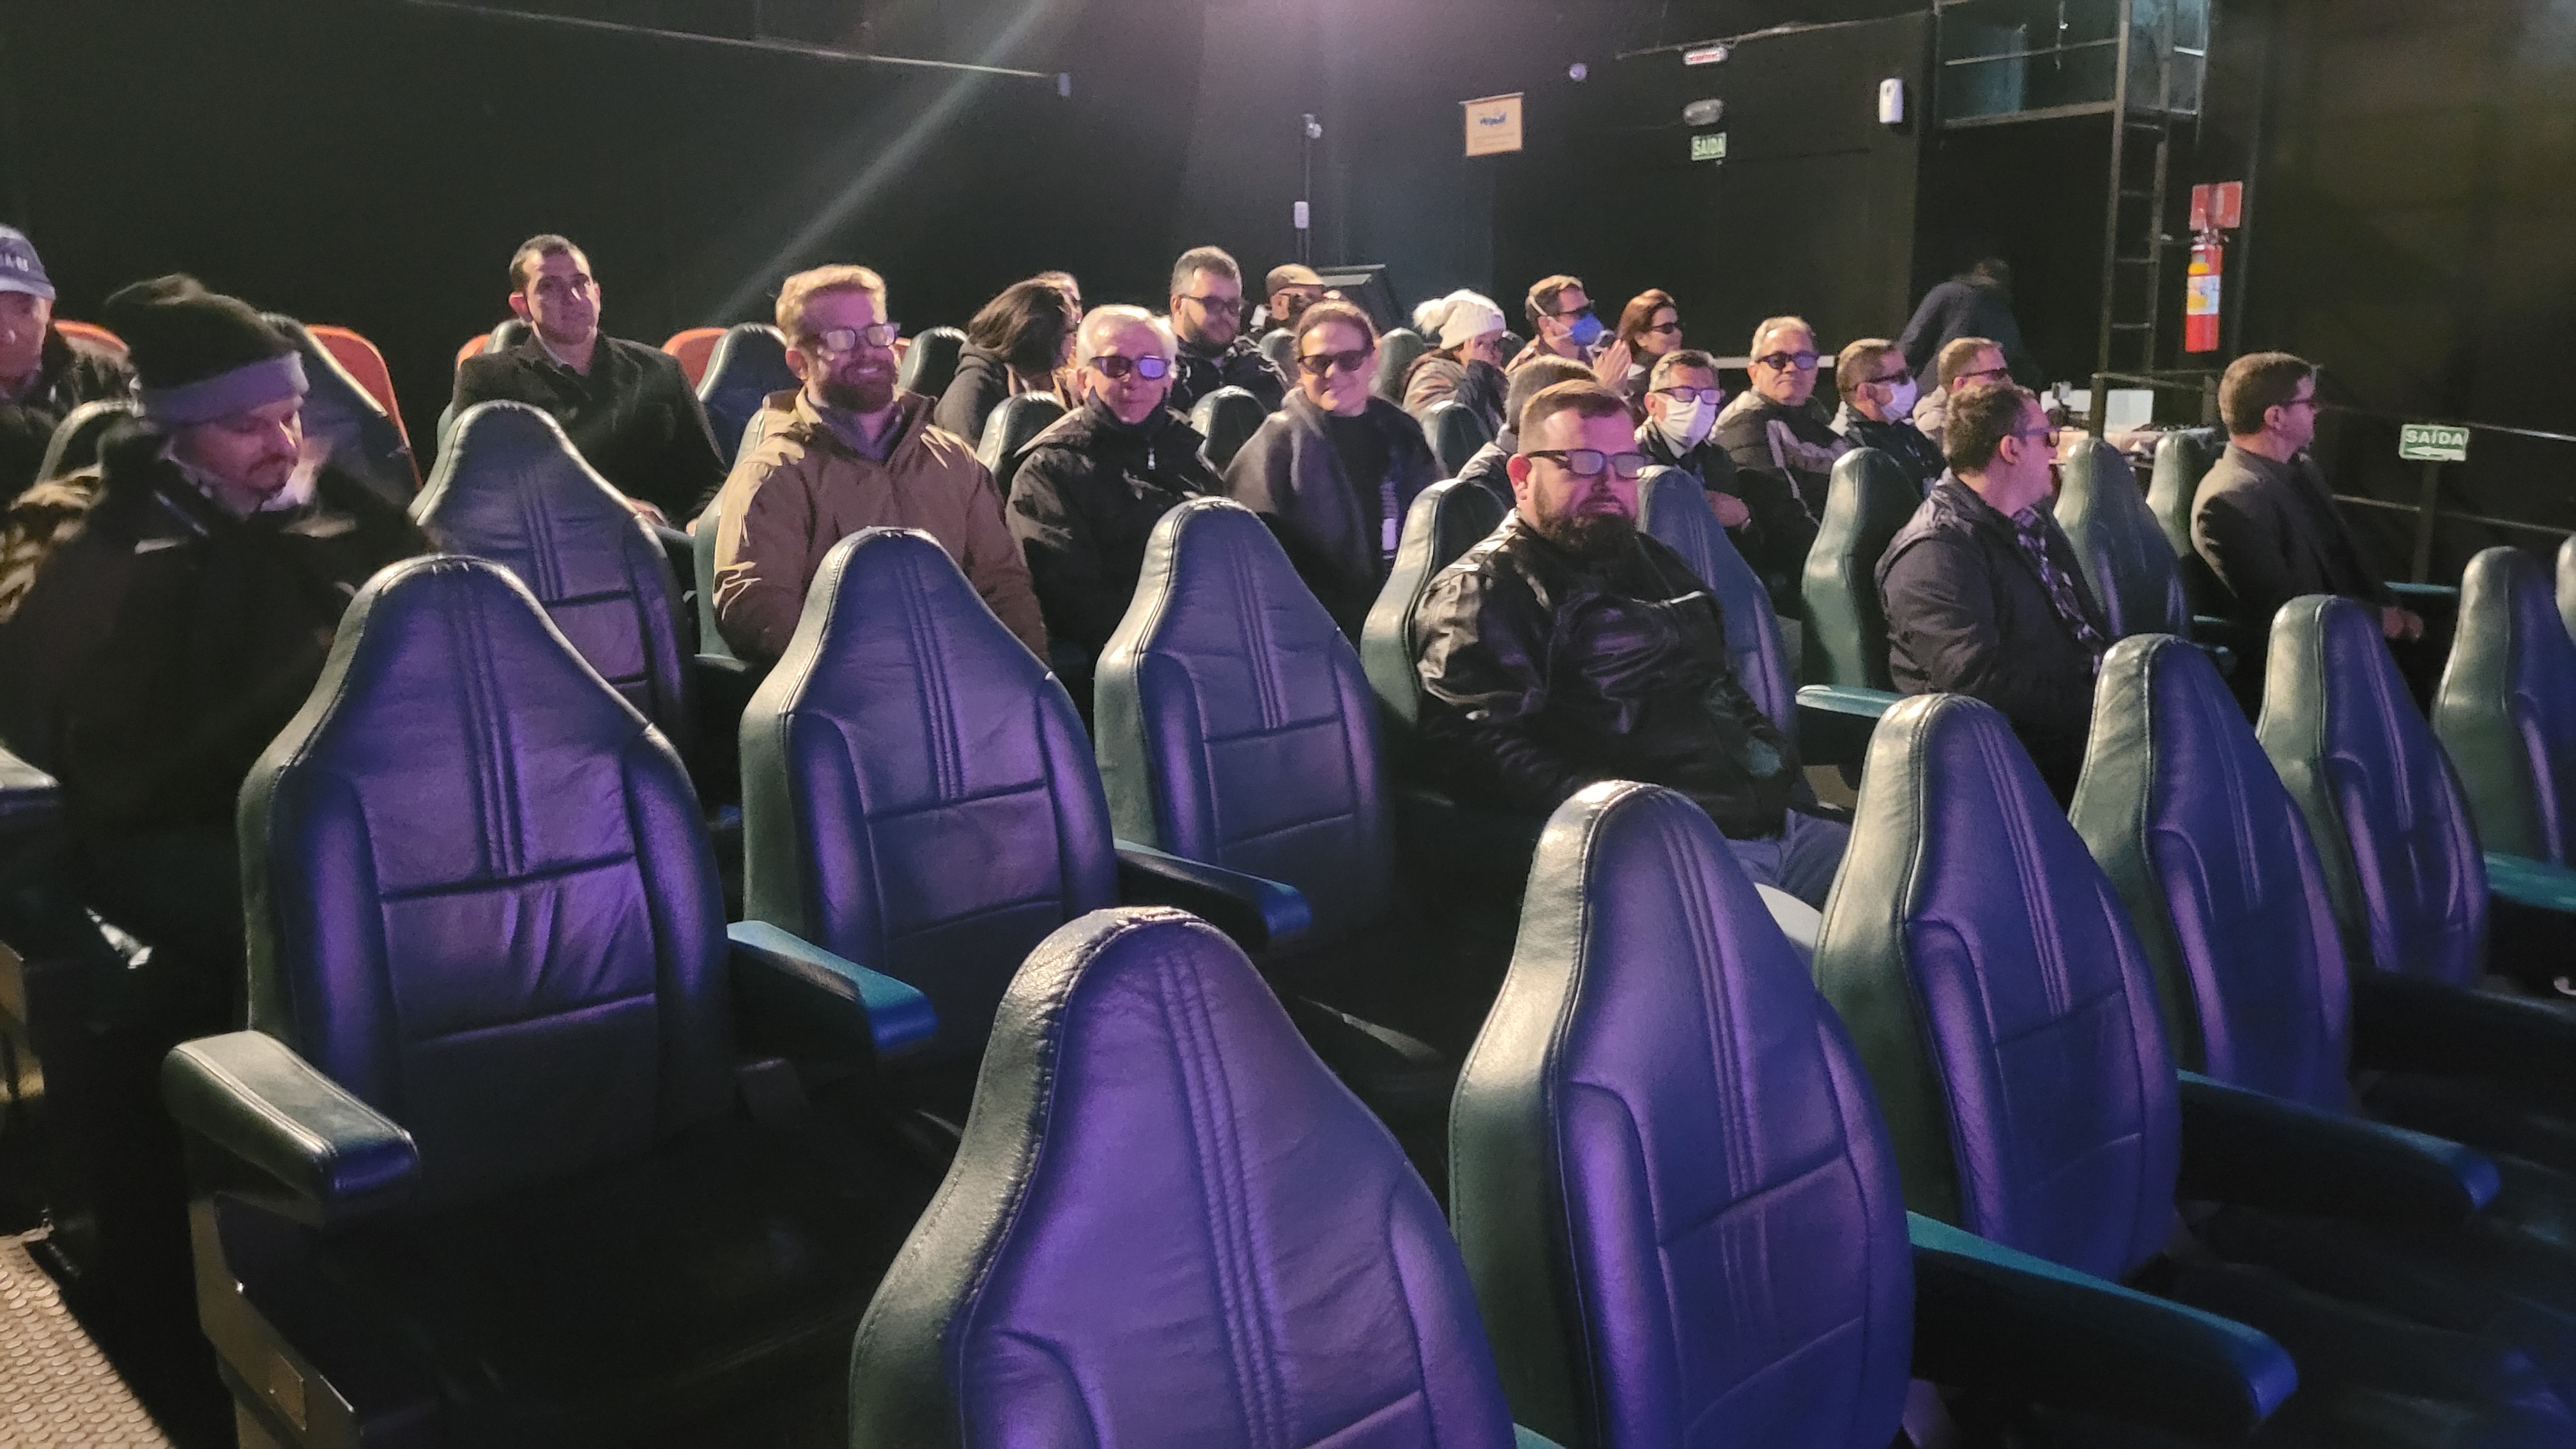 Comitiva conheceu algumas atrações que utilizam o processo mecânico, como o Cinema 4D